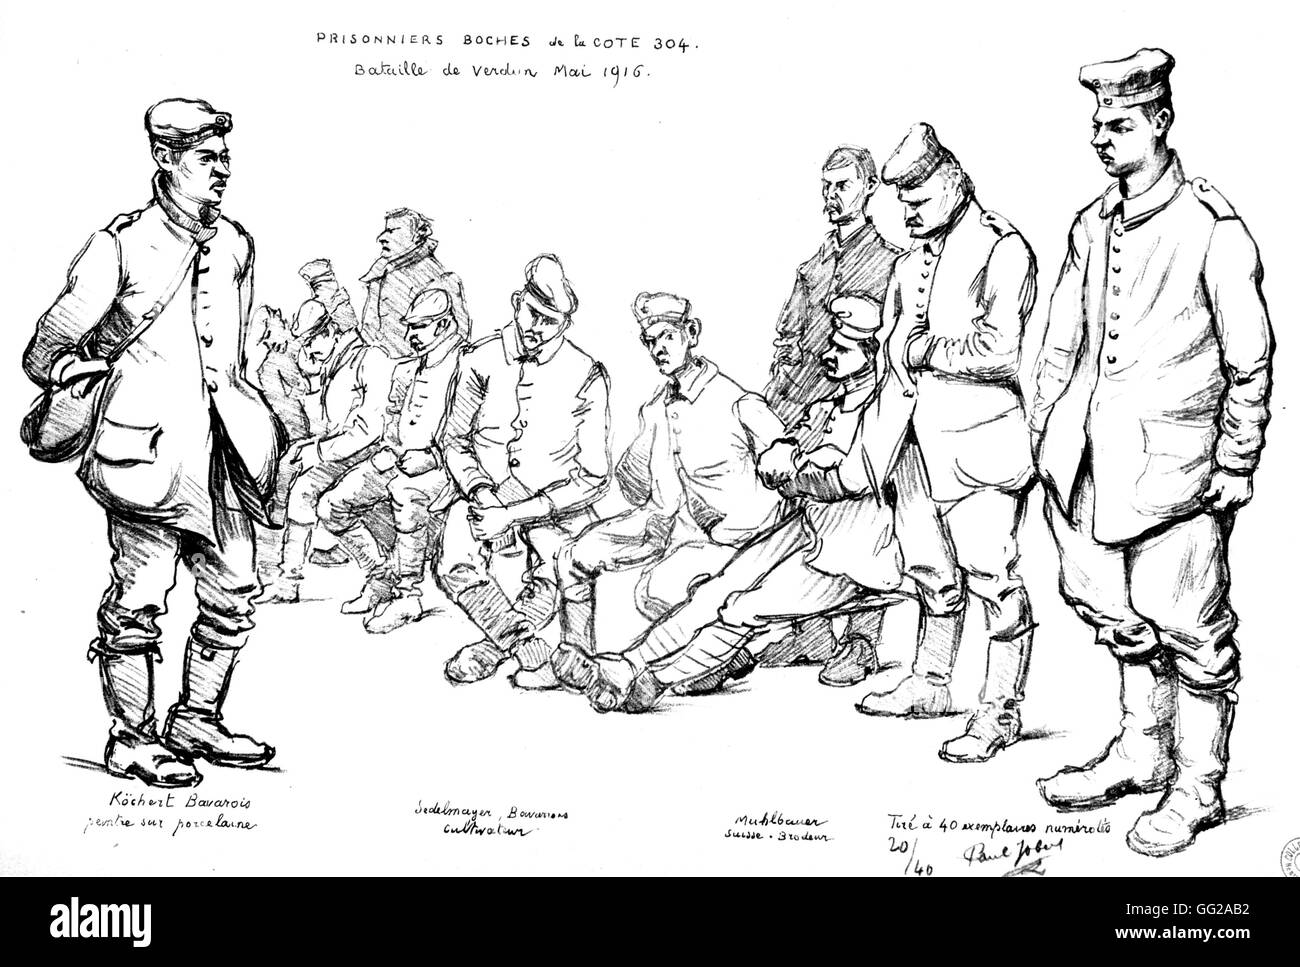 Deutsche Kriegsgefangene der Küste 304 während der Schlacht um Verdun. Zeichnung von Paul Jobert. Mai 1916 Frankreich - Weltkrieg Vincennes. Kriegsmuseum Stockfoto